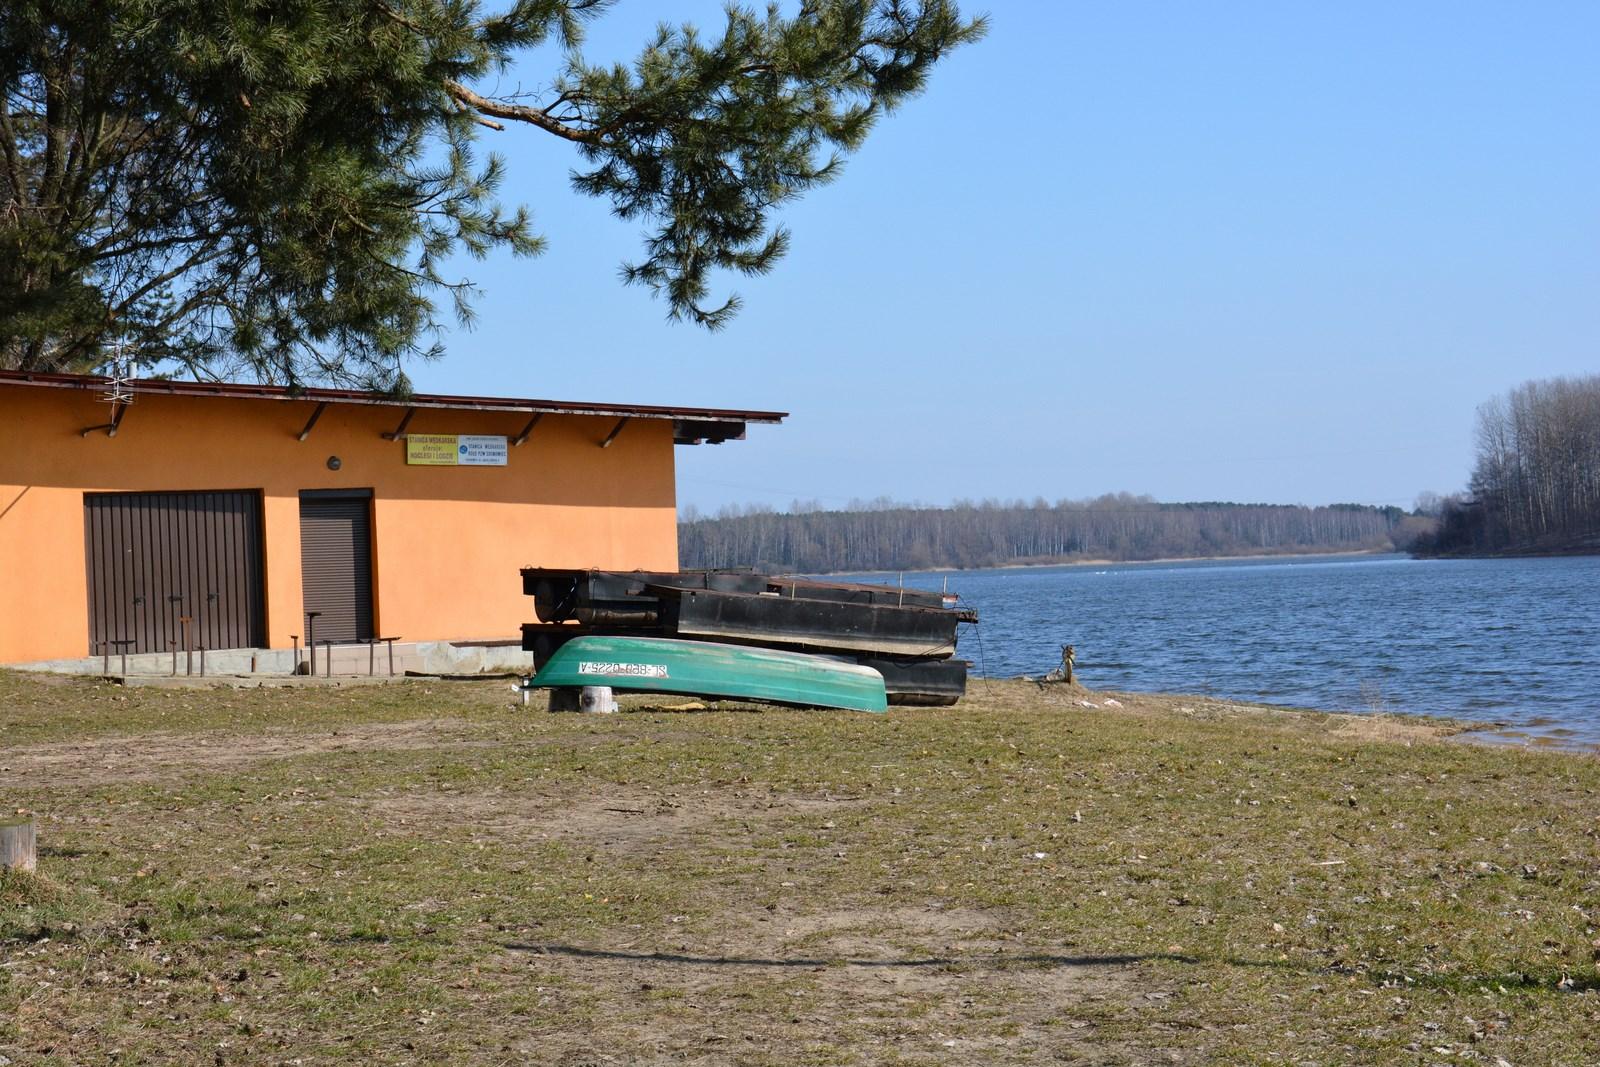 Jezioro Przeczyckie